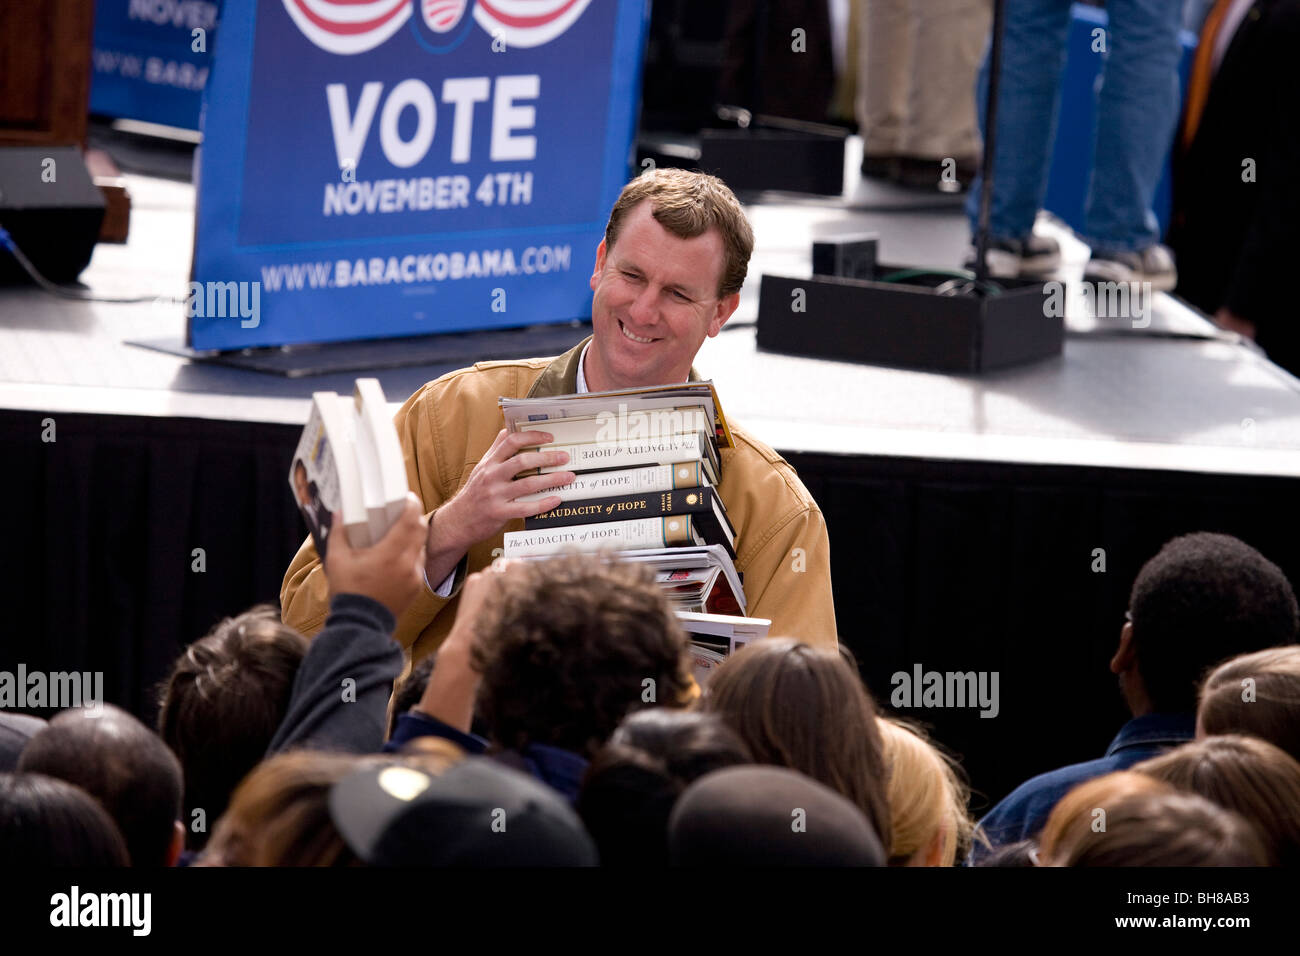 El hombre recoge libros de Barack Obama para ser firmado a principios de votar por el cambio rally Presidencial, 29 de octubre de 2008 en Halifax Mall Foto de stock